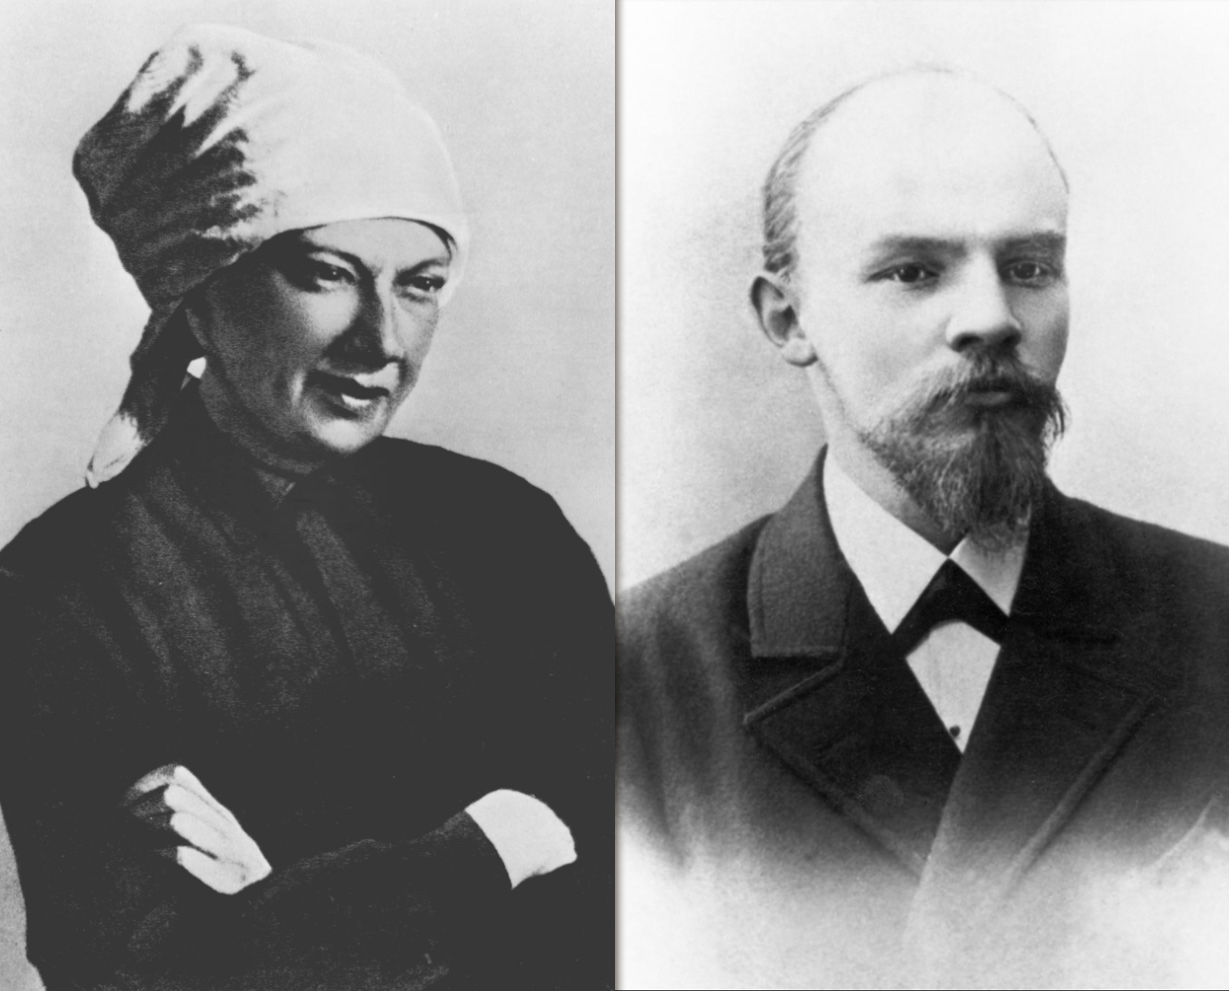 Ленин и крупская молодые фото